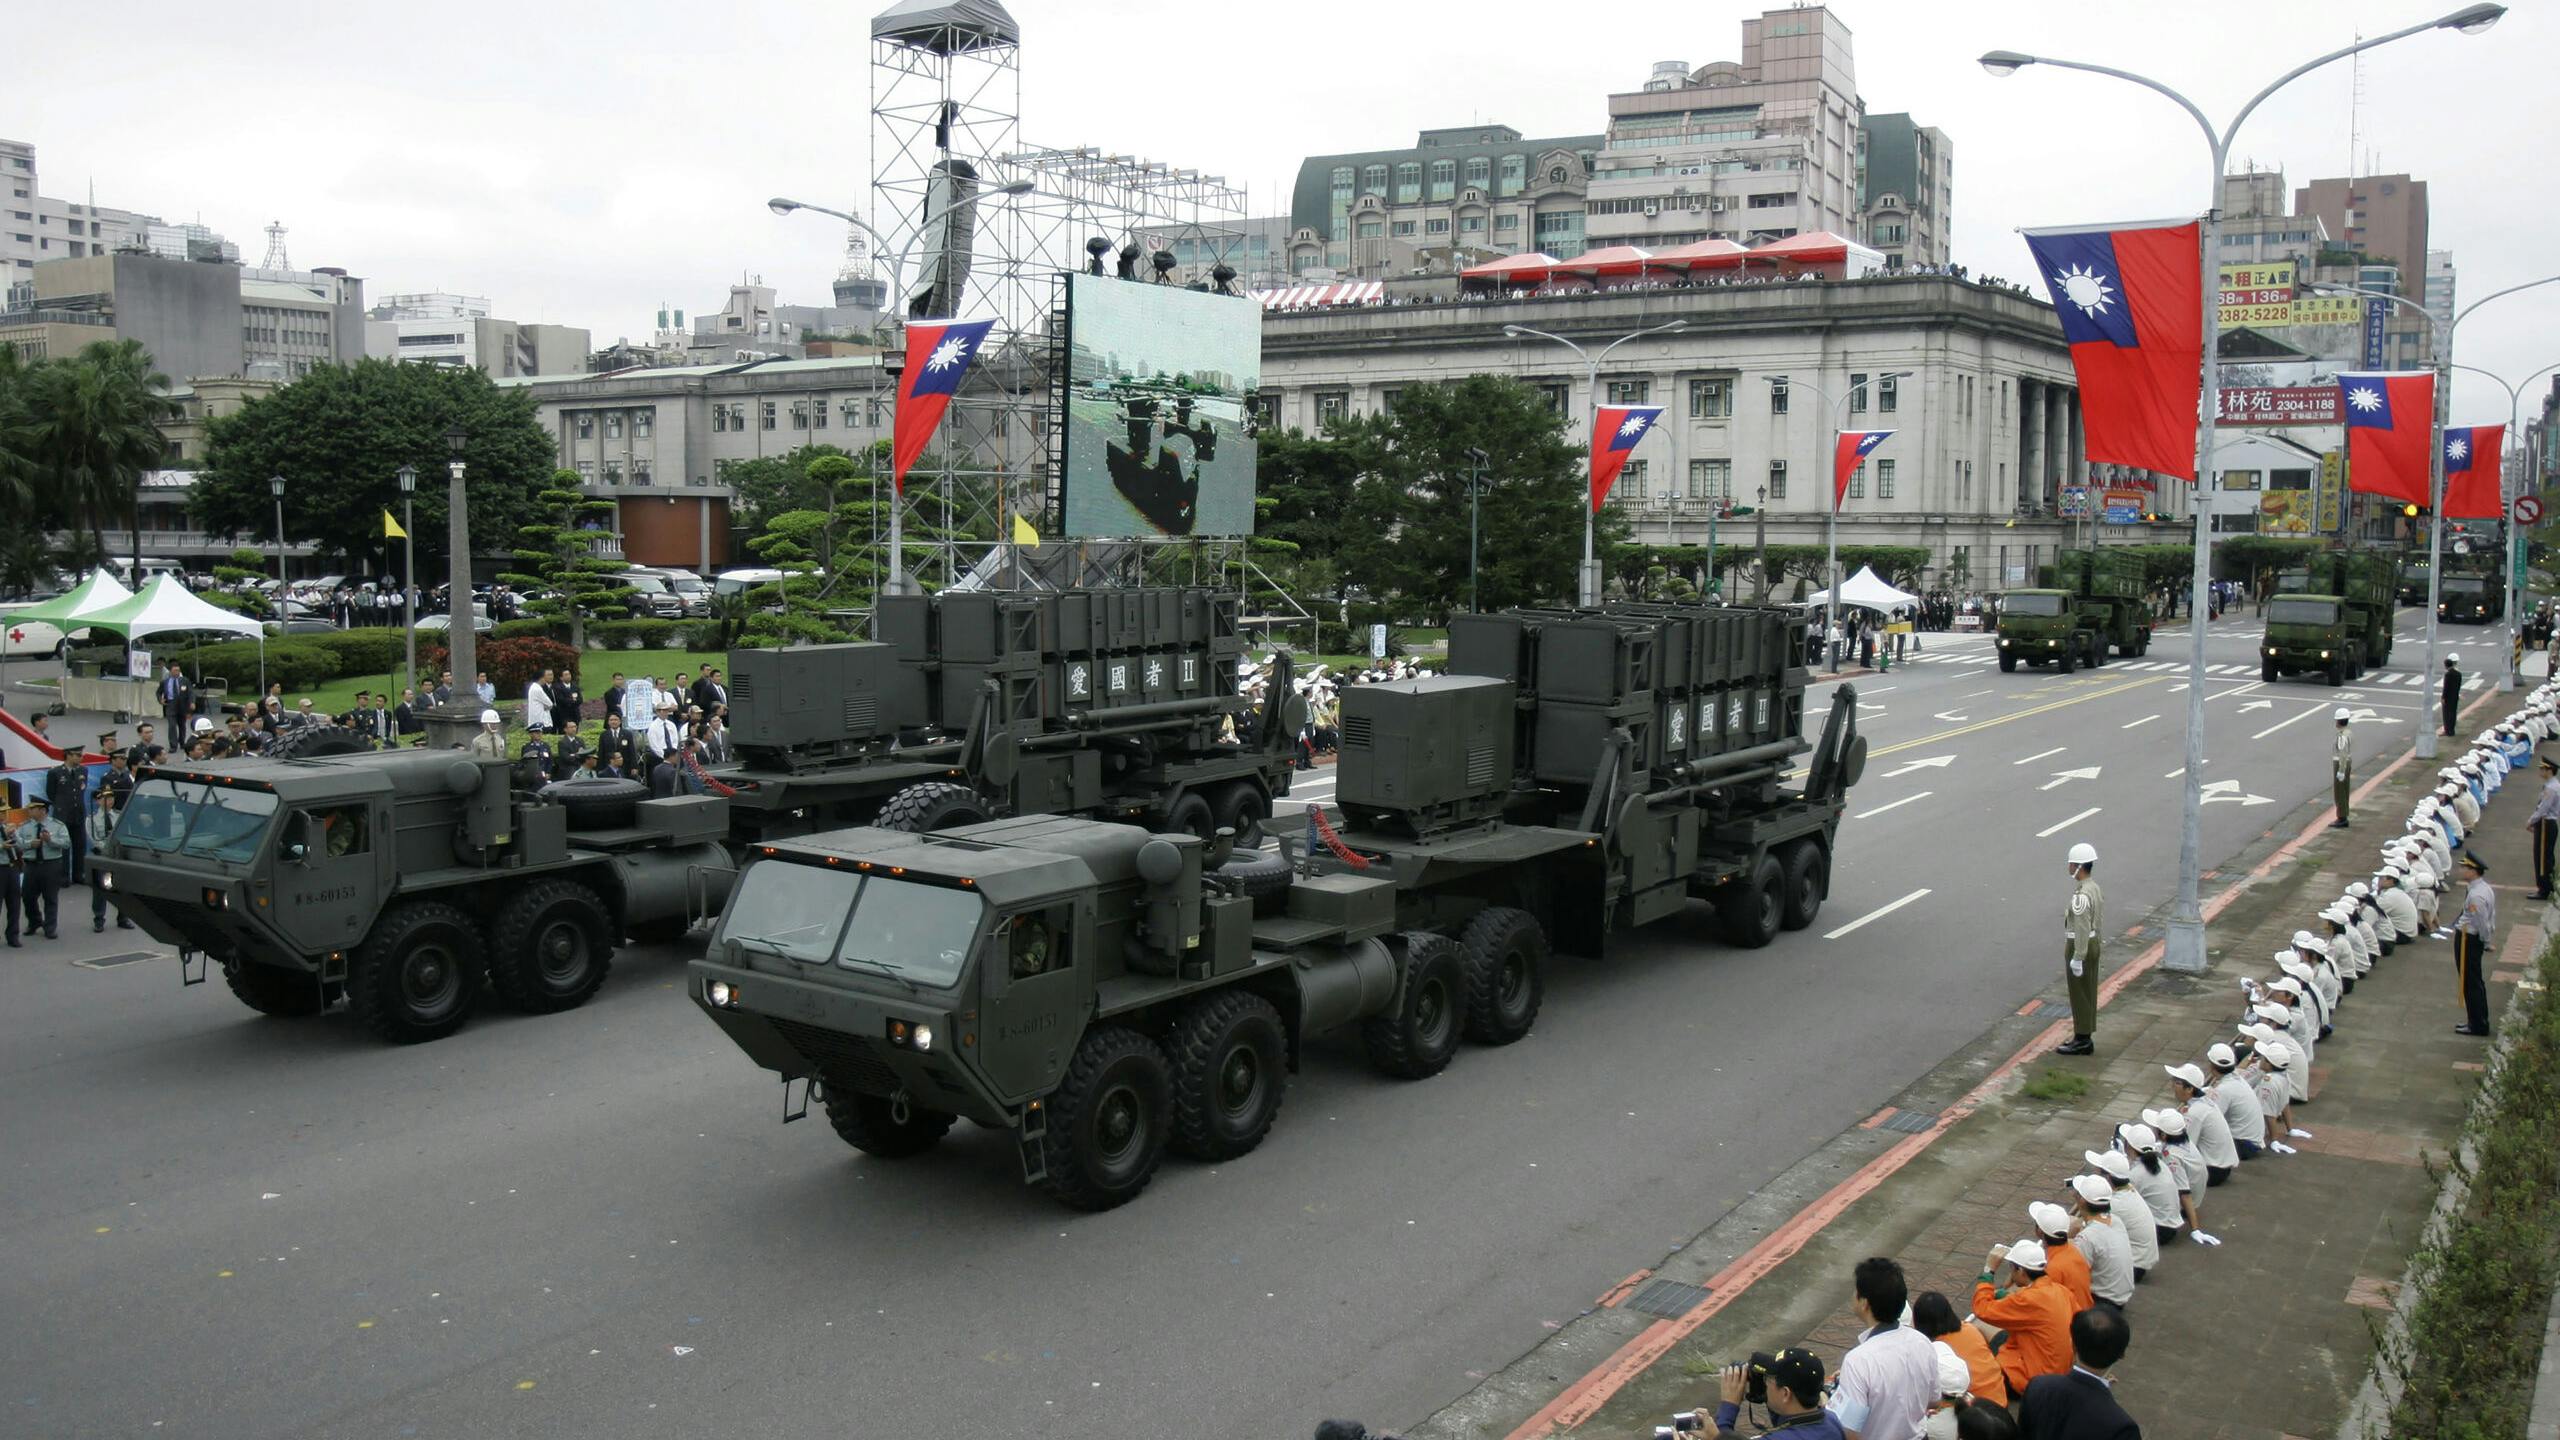 Taiwanese raketten van Amerikaanse makelij in de Taiwanese hoofdstad Taipei.